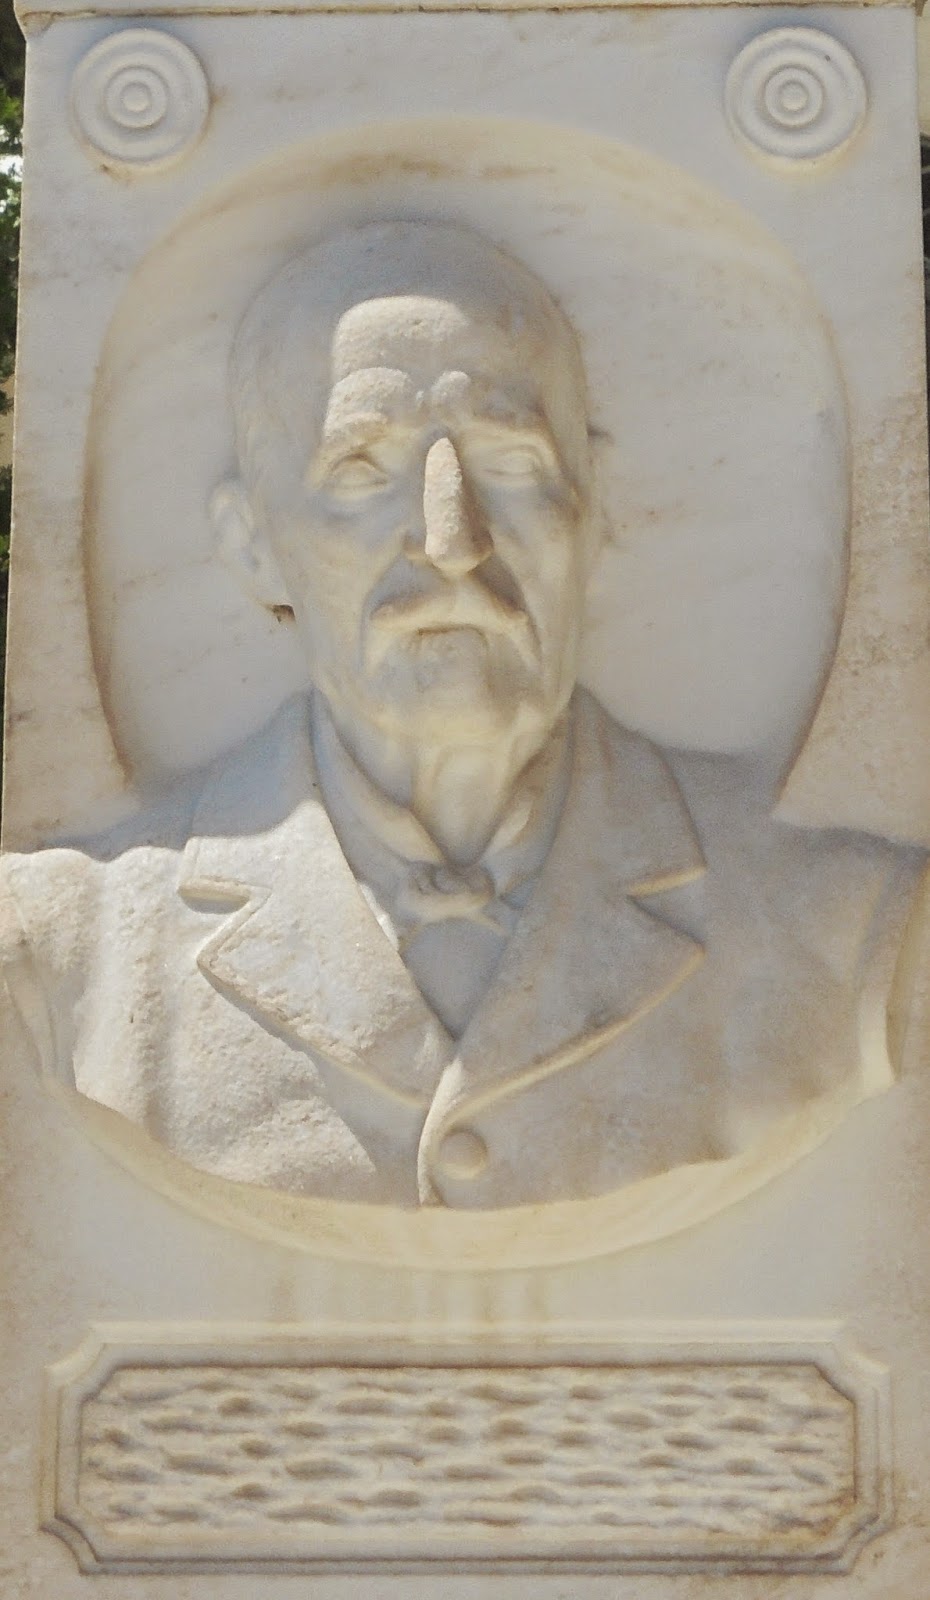 το ταφικό μνημείο του οίκου Μιχαήλ Εμπειρίκου στο νεκροταφείο της Άνδρου